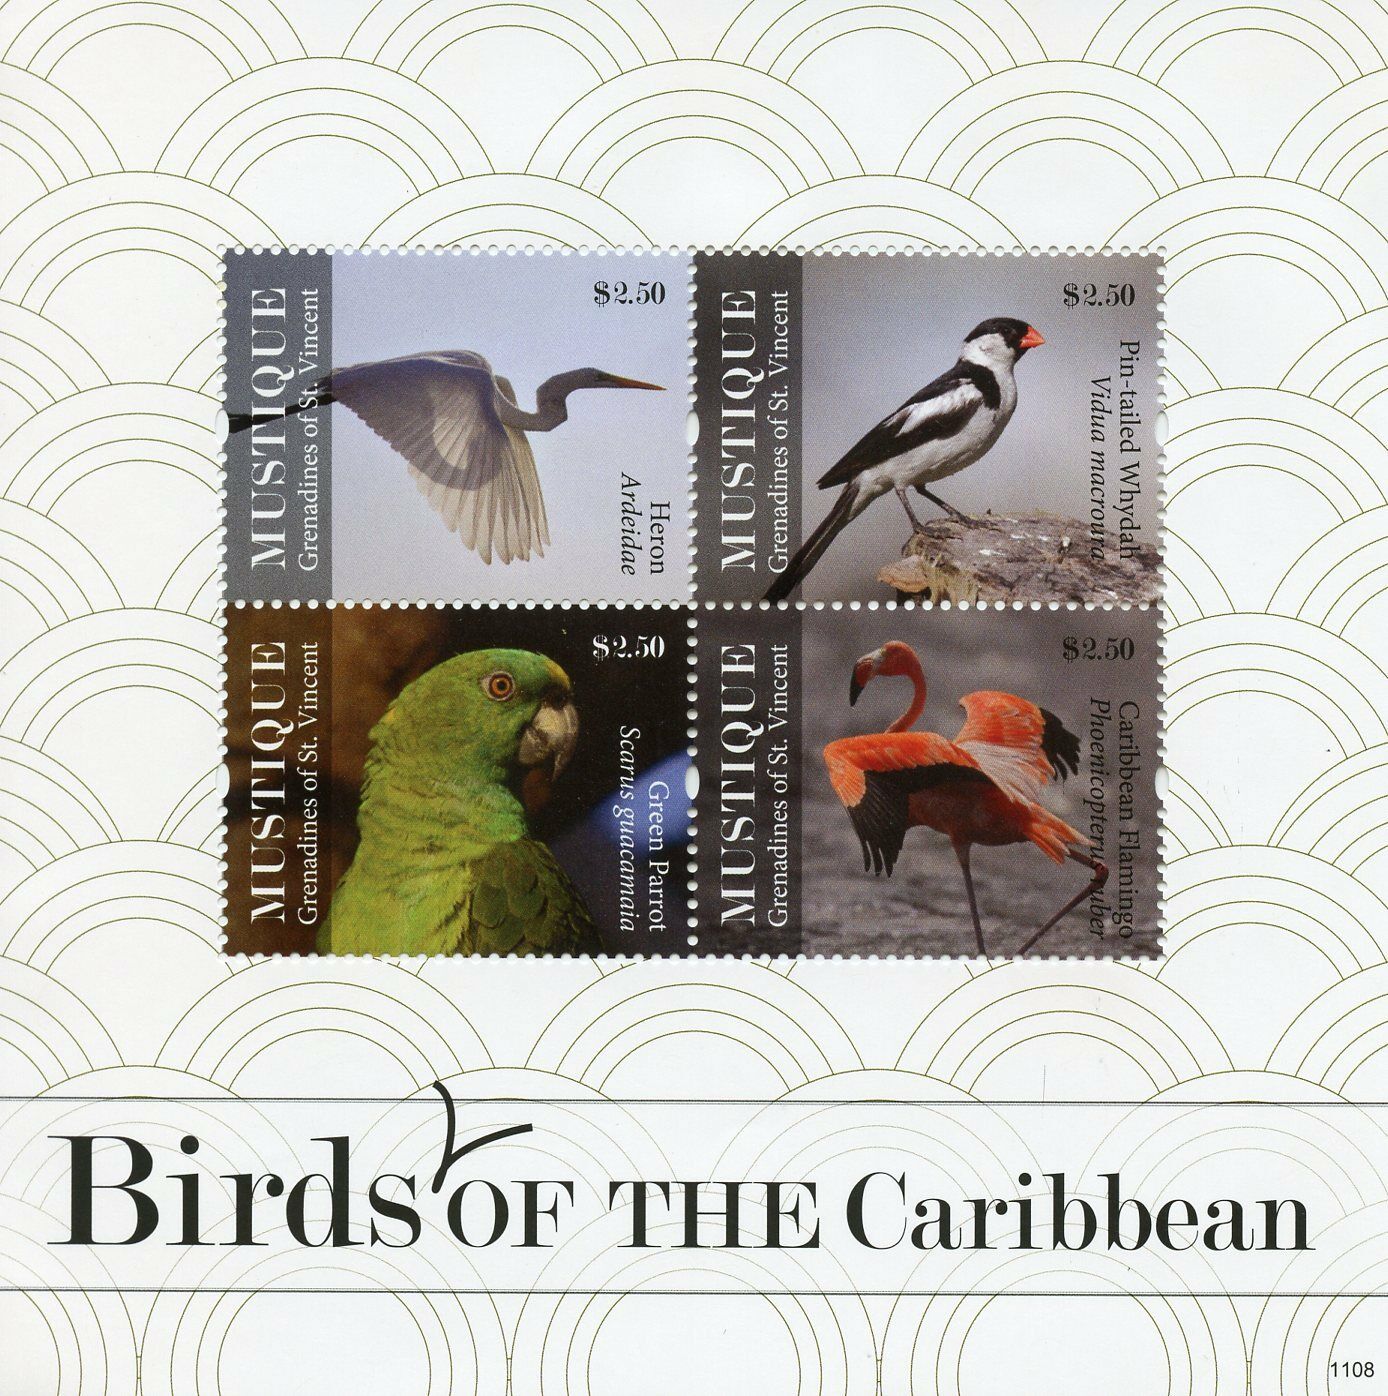 Mustique Gren St Vincent Stamps 2011 MNH Birds of Caribbean on Stamps Parrots 4v M/S I